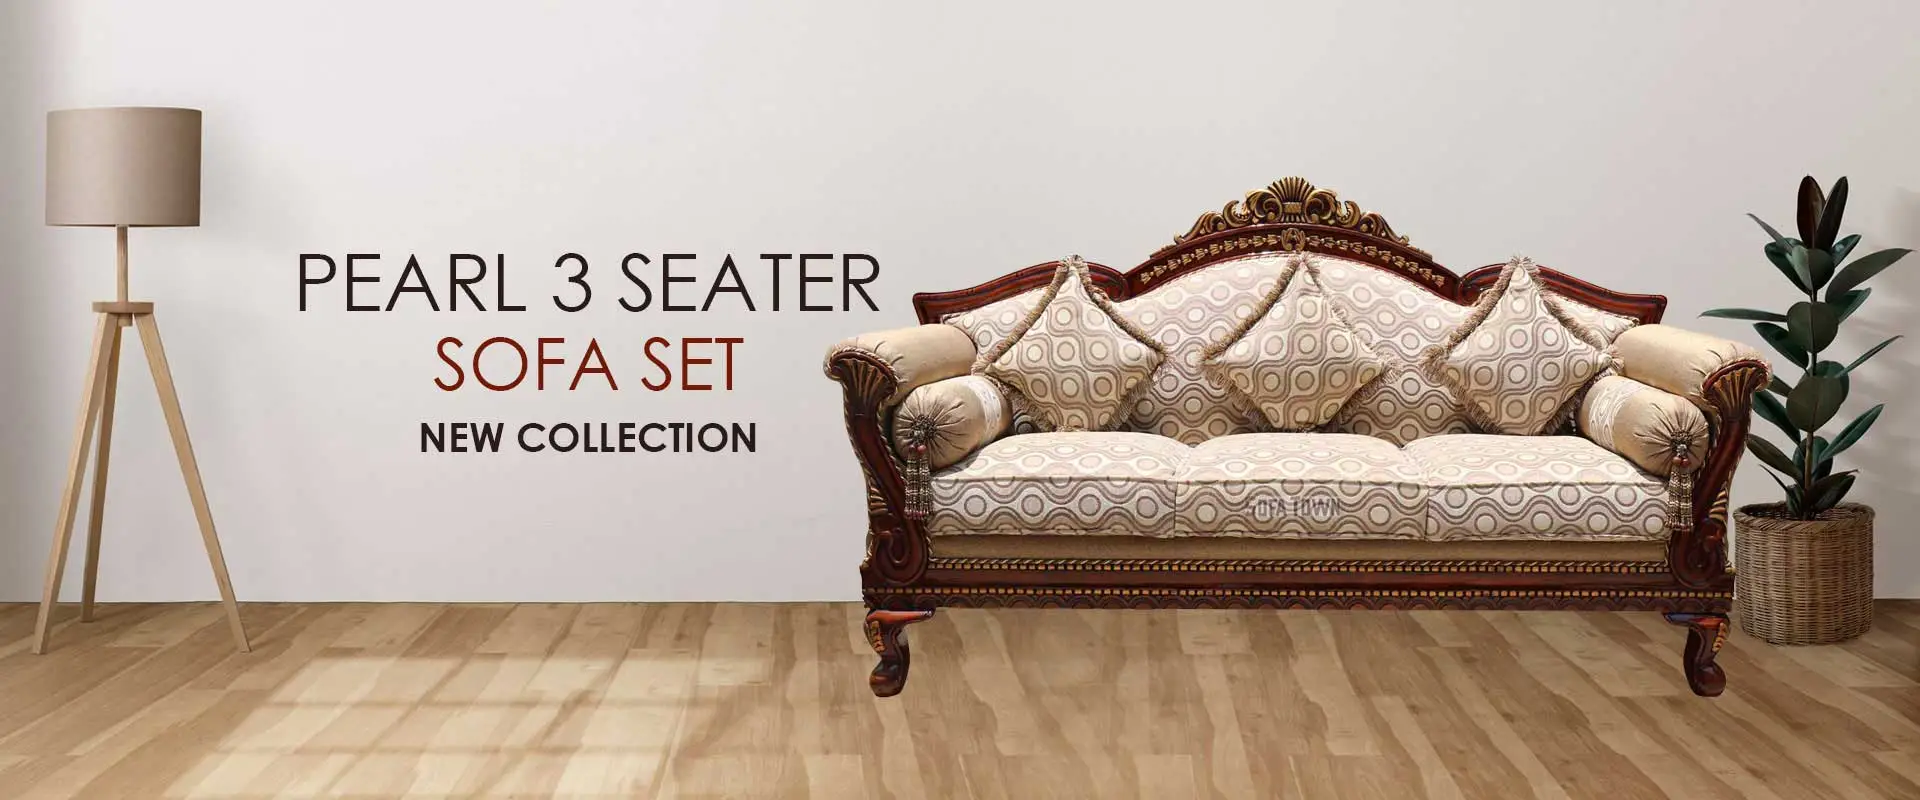 Pearl 3 Seater Sofa Set  Manufacturers in Buldhana